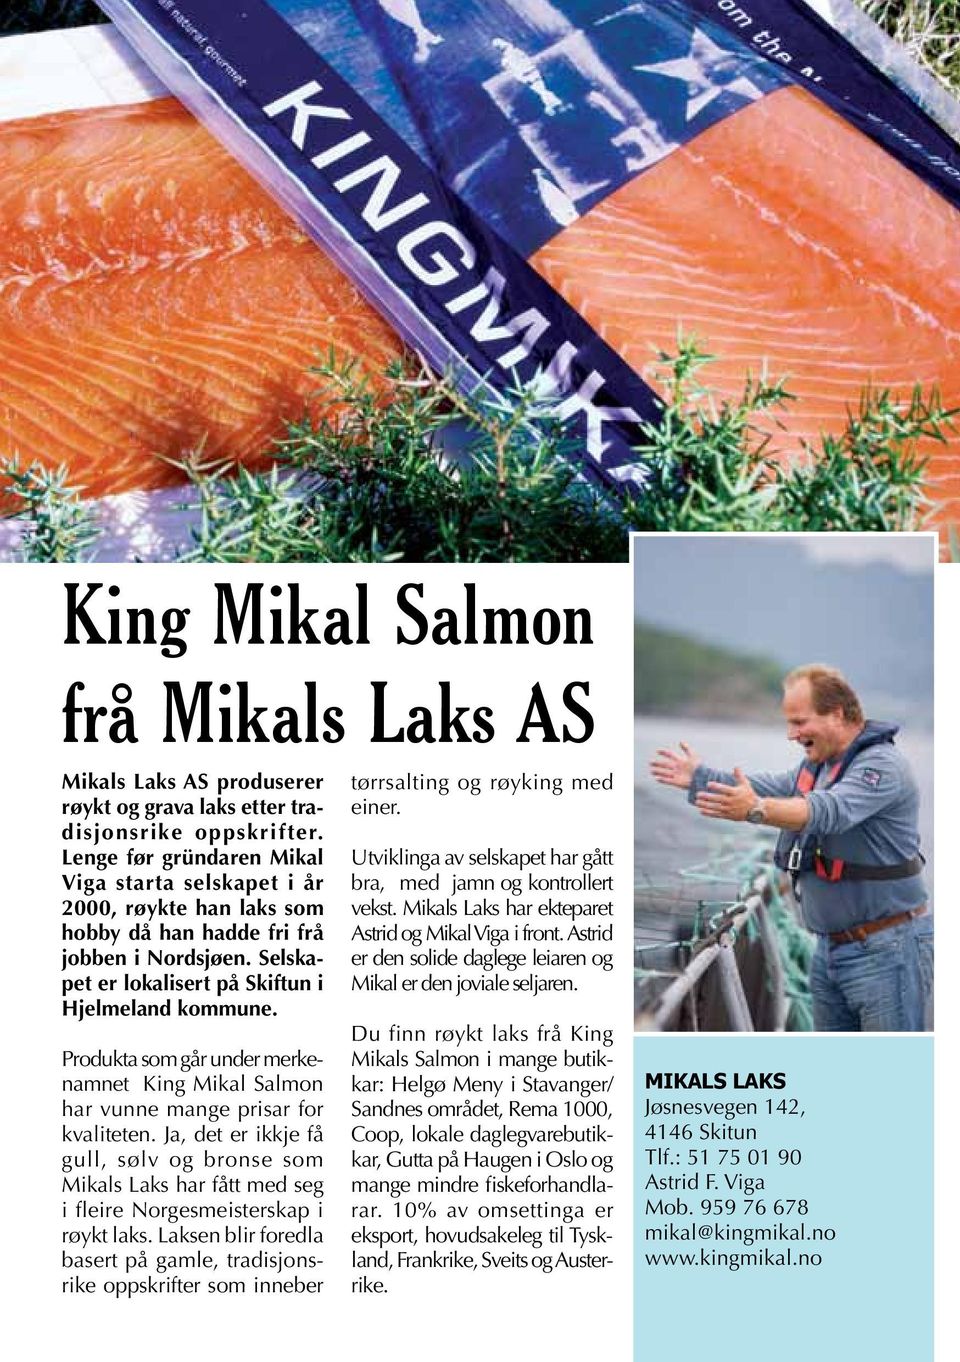 Produkta som går under merkenamnet King Mikal Salmon har vunne mange prisar for kvaliteten.